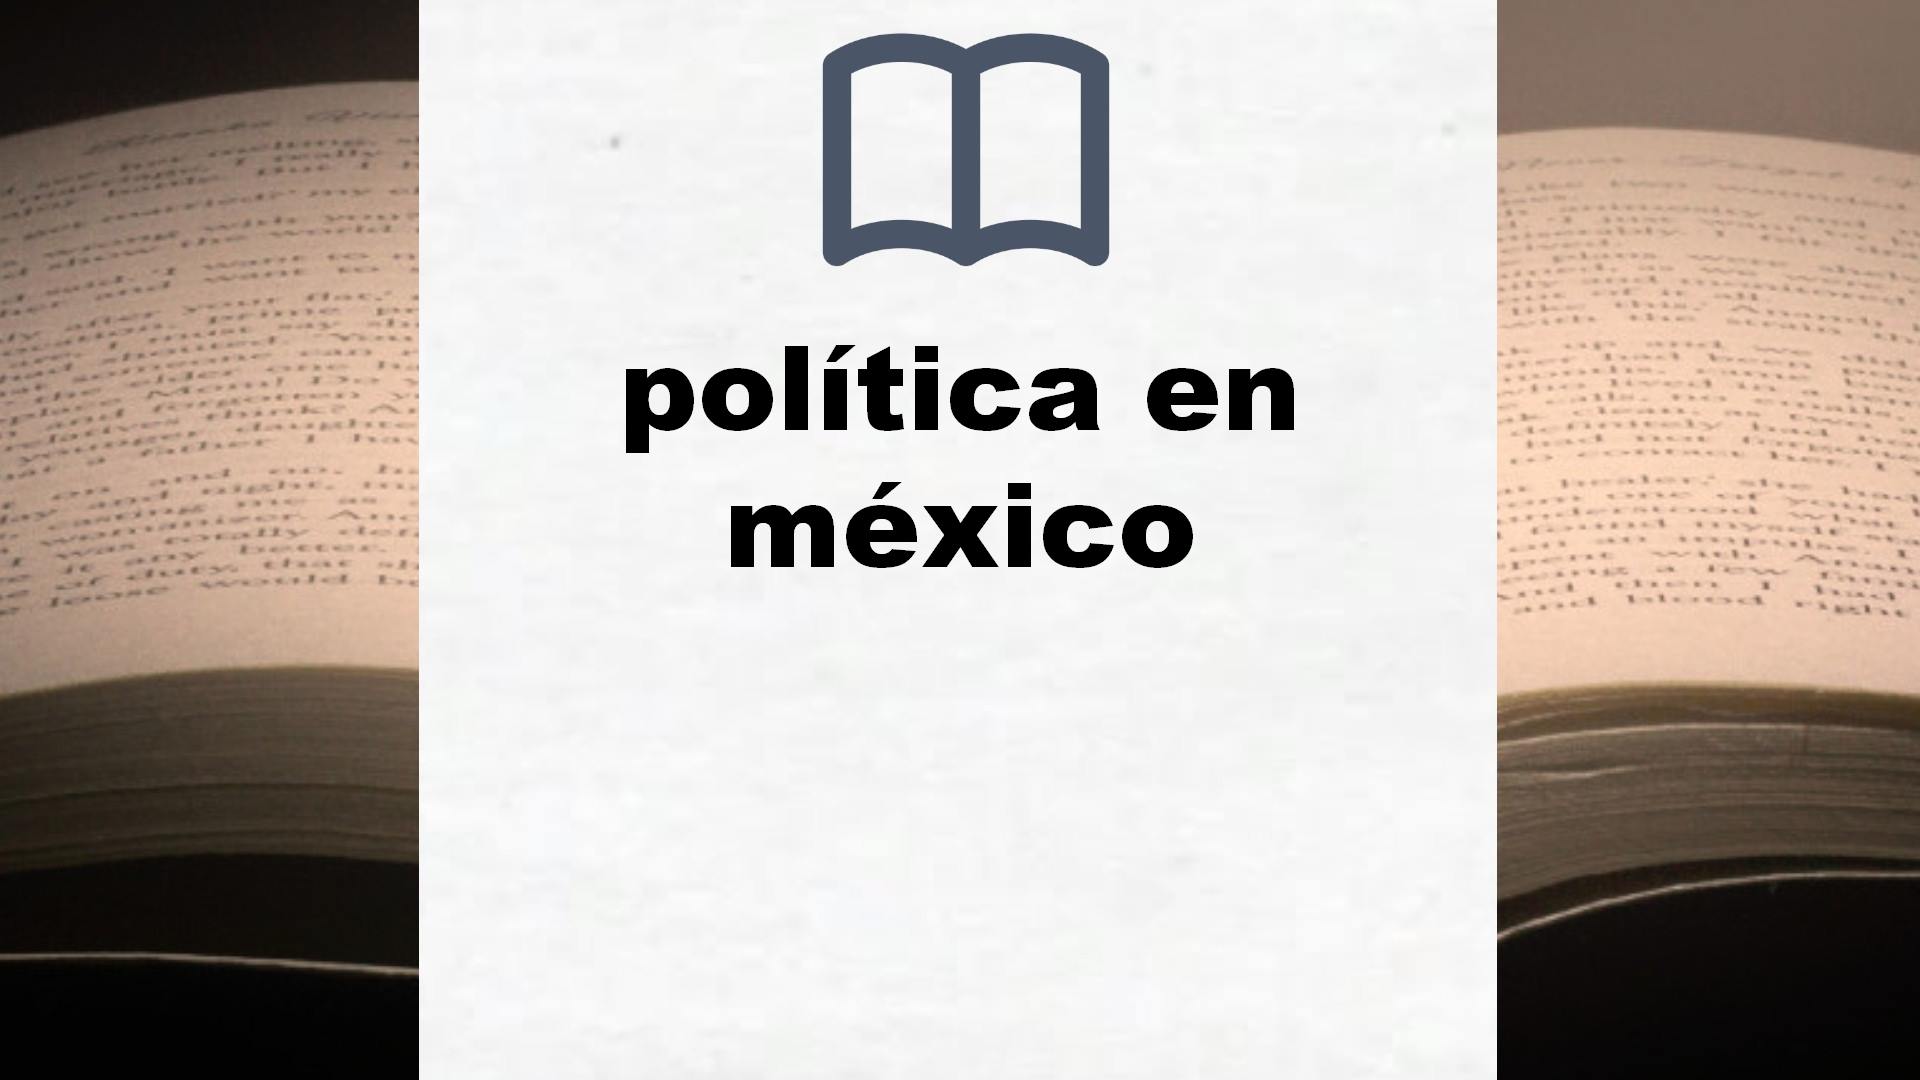 Libros sobre política en méxico